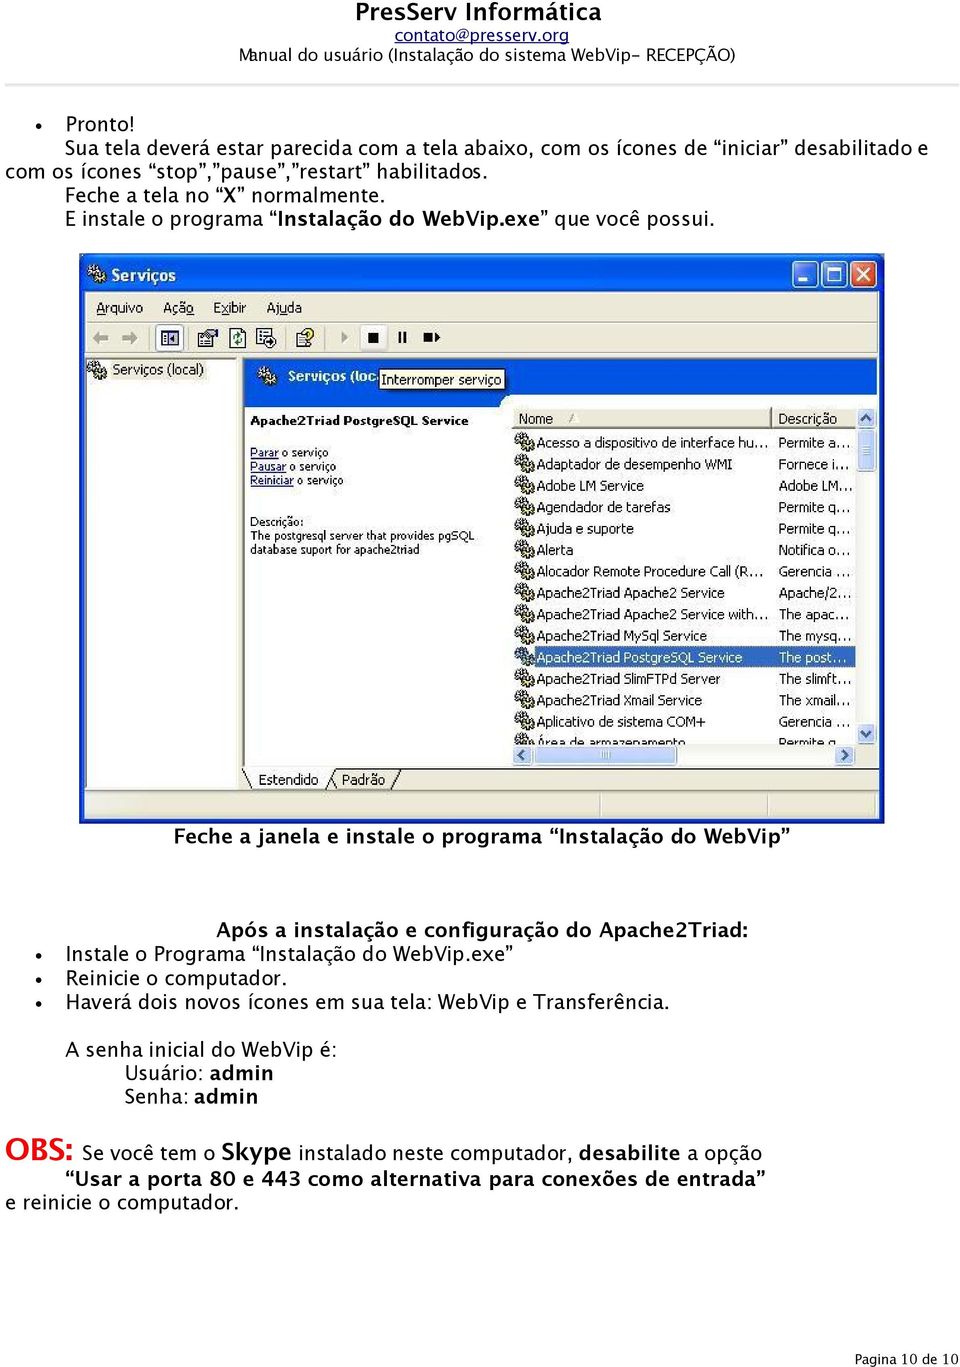 Feche a janela e instale o programa Instalação do WebVip Após a instalação e configuração do Apache2Triad: Instale o Programa Instalação do WebVip.exe Reinicie o computador.